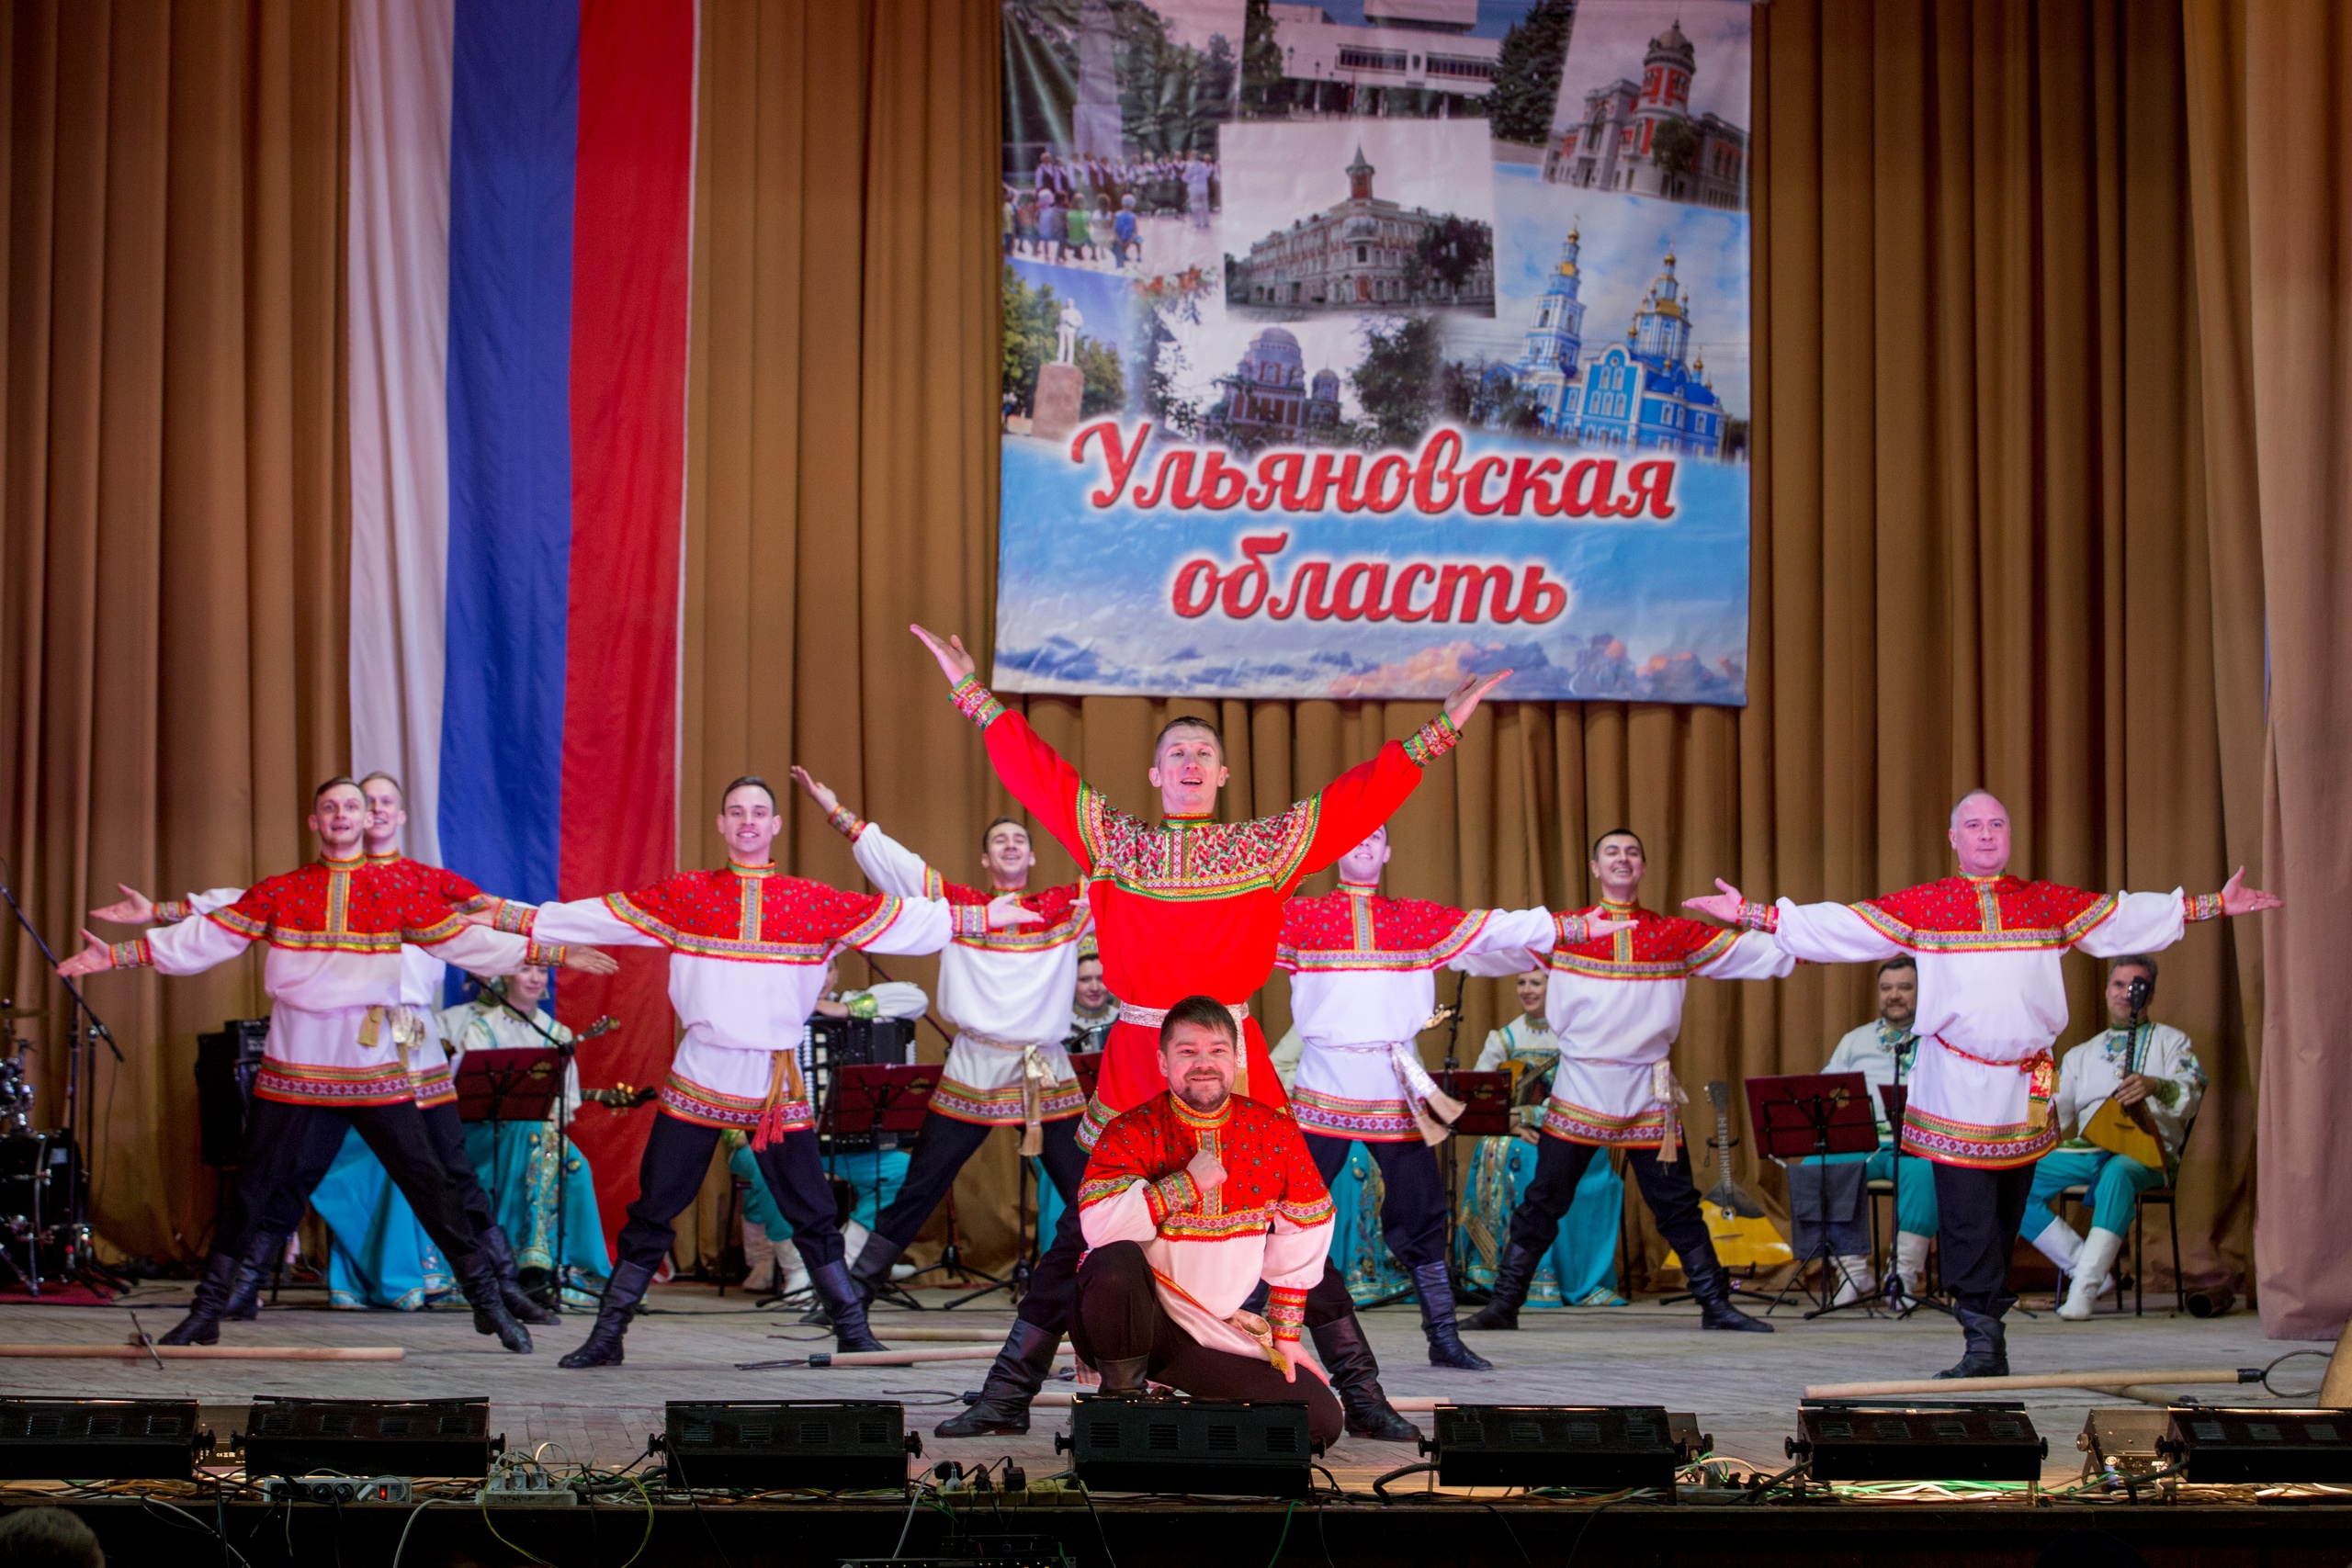 Друзья, сегодня эстафету гостеприимства и радушия в честь юбилея области перенял г.Новоульяновск